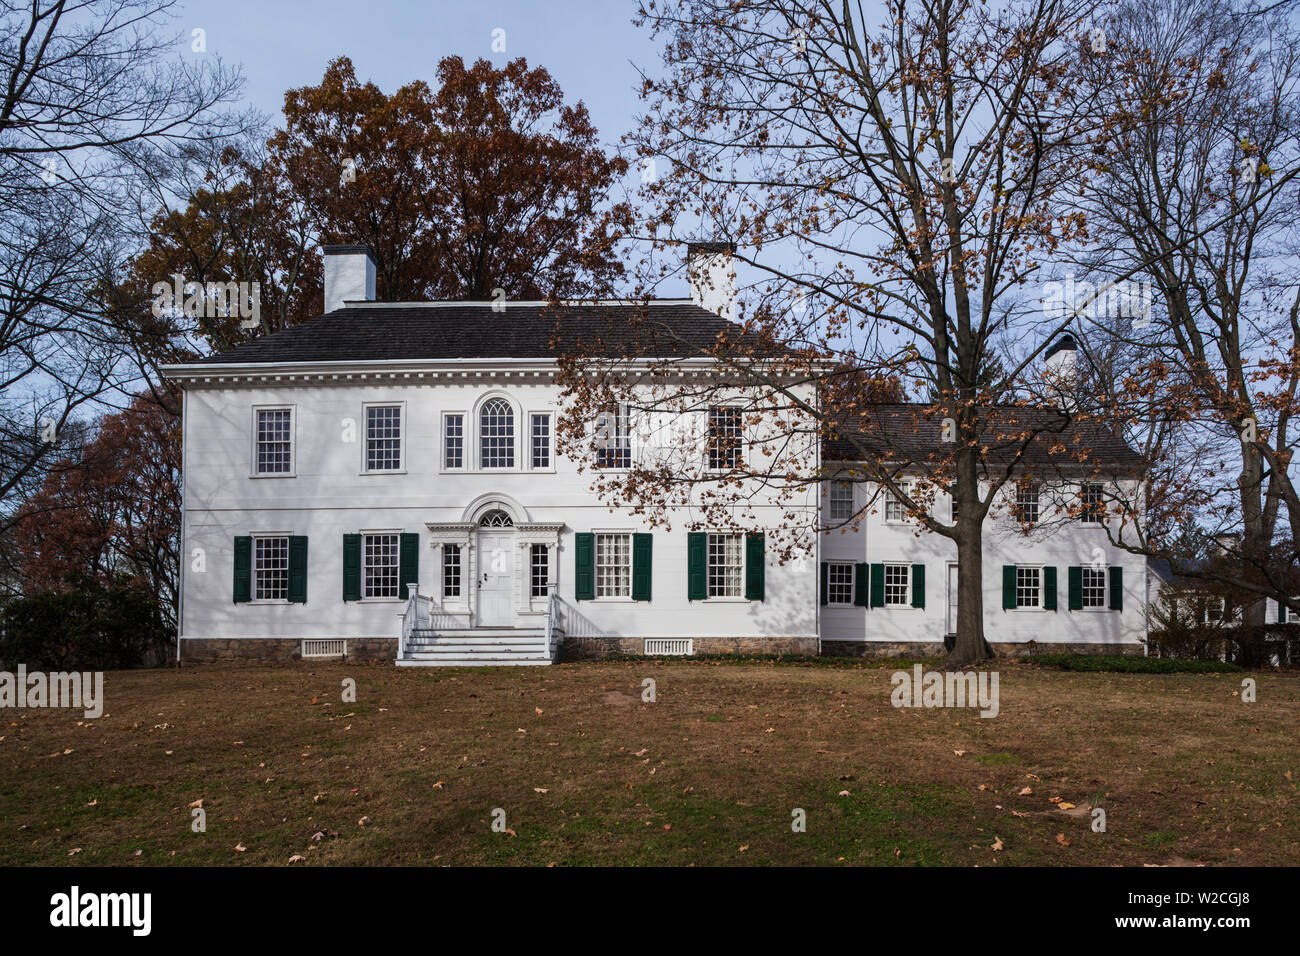 USA, New Jersey, Morristown, Parc historique national de Morristown, Ford Mansion, siège de George Washington pendant la Révolution américaine Banque D'Images